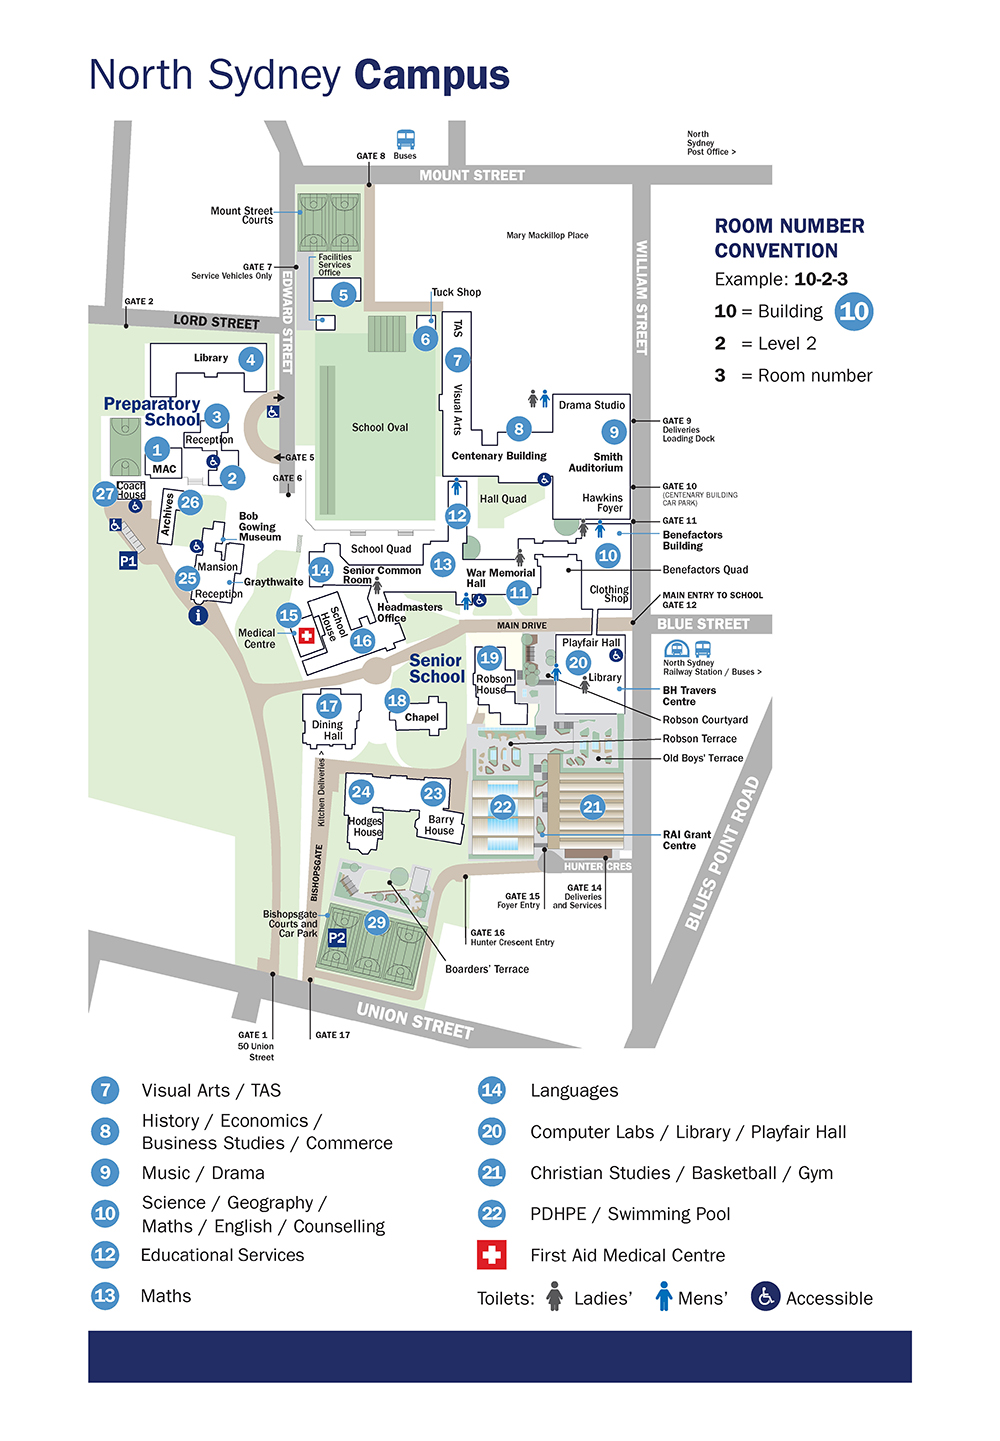 North Sydney Campus Map